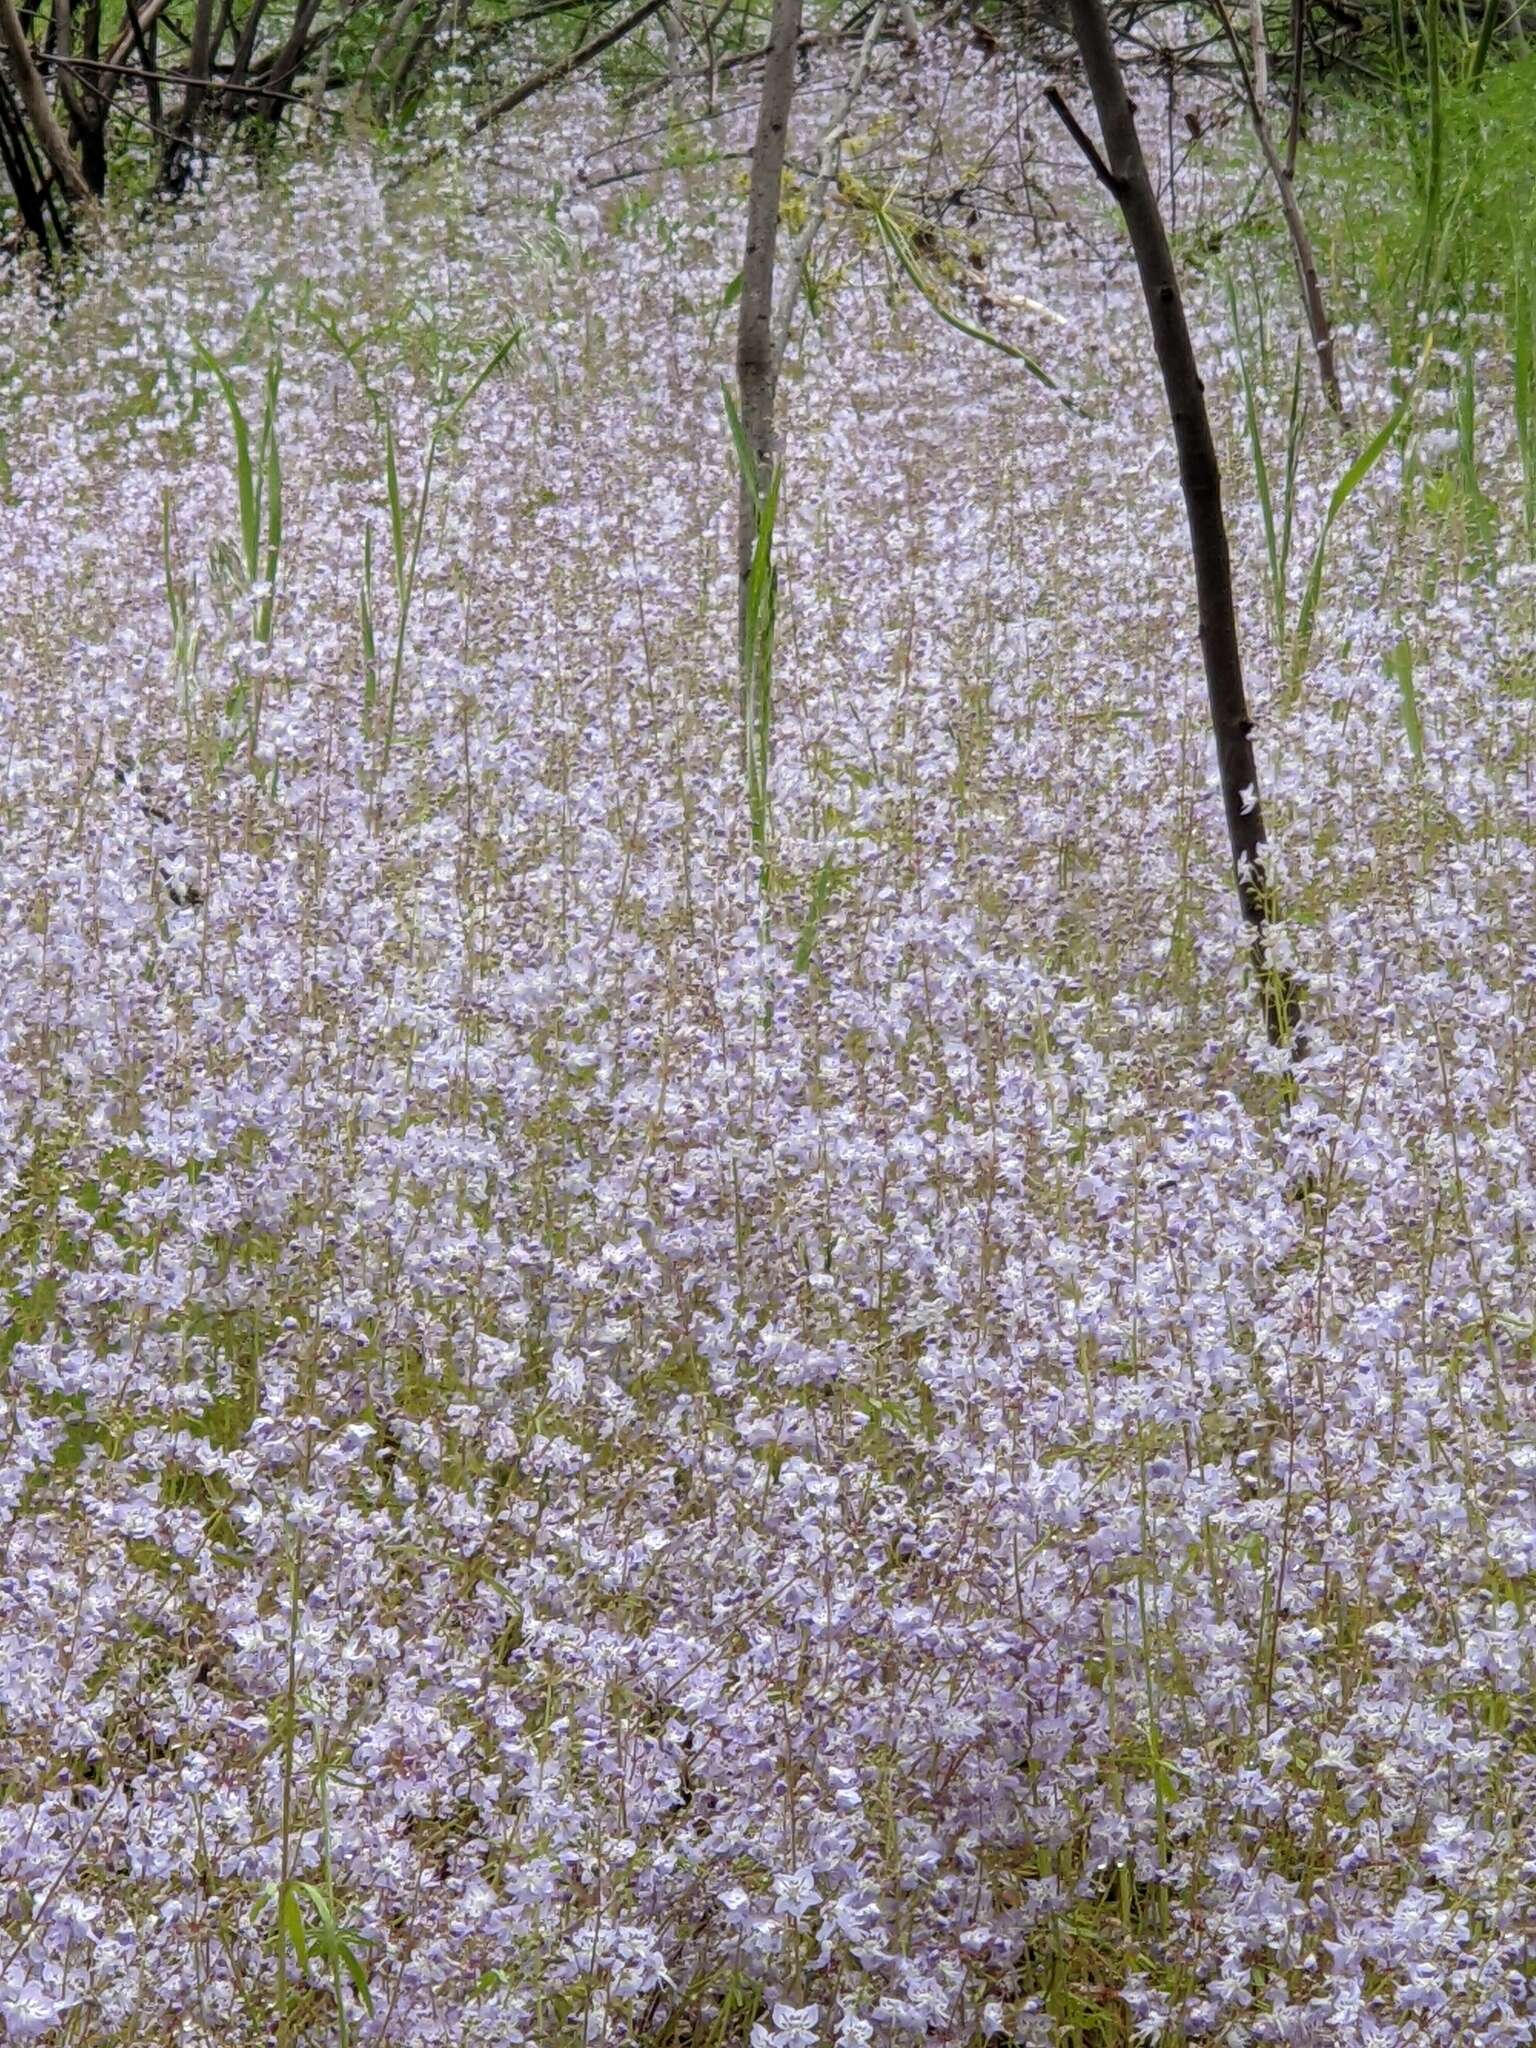 Image of manyflower tonella